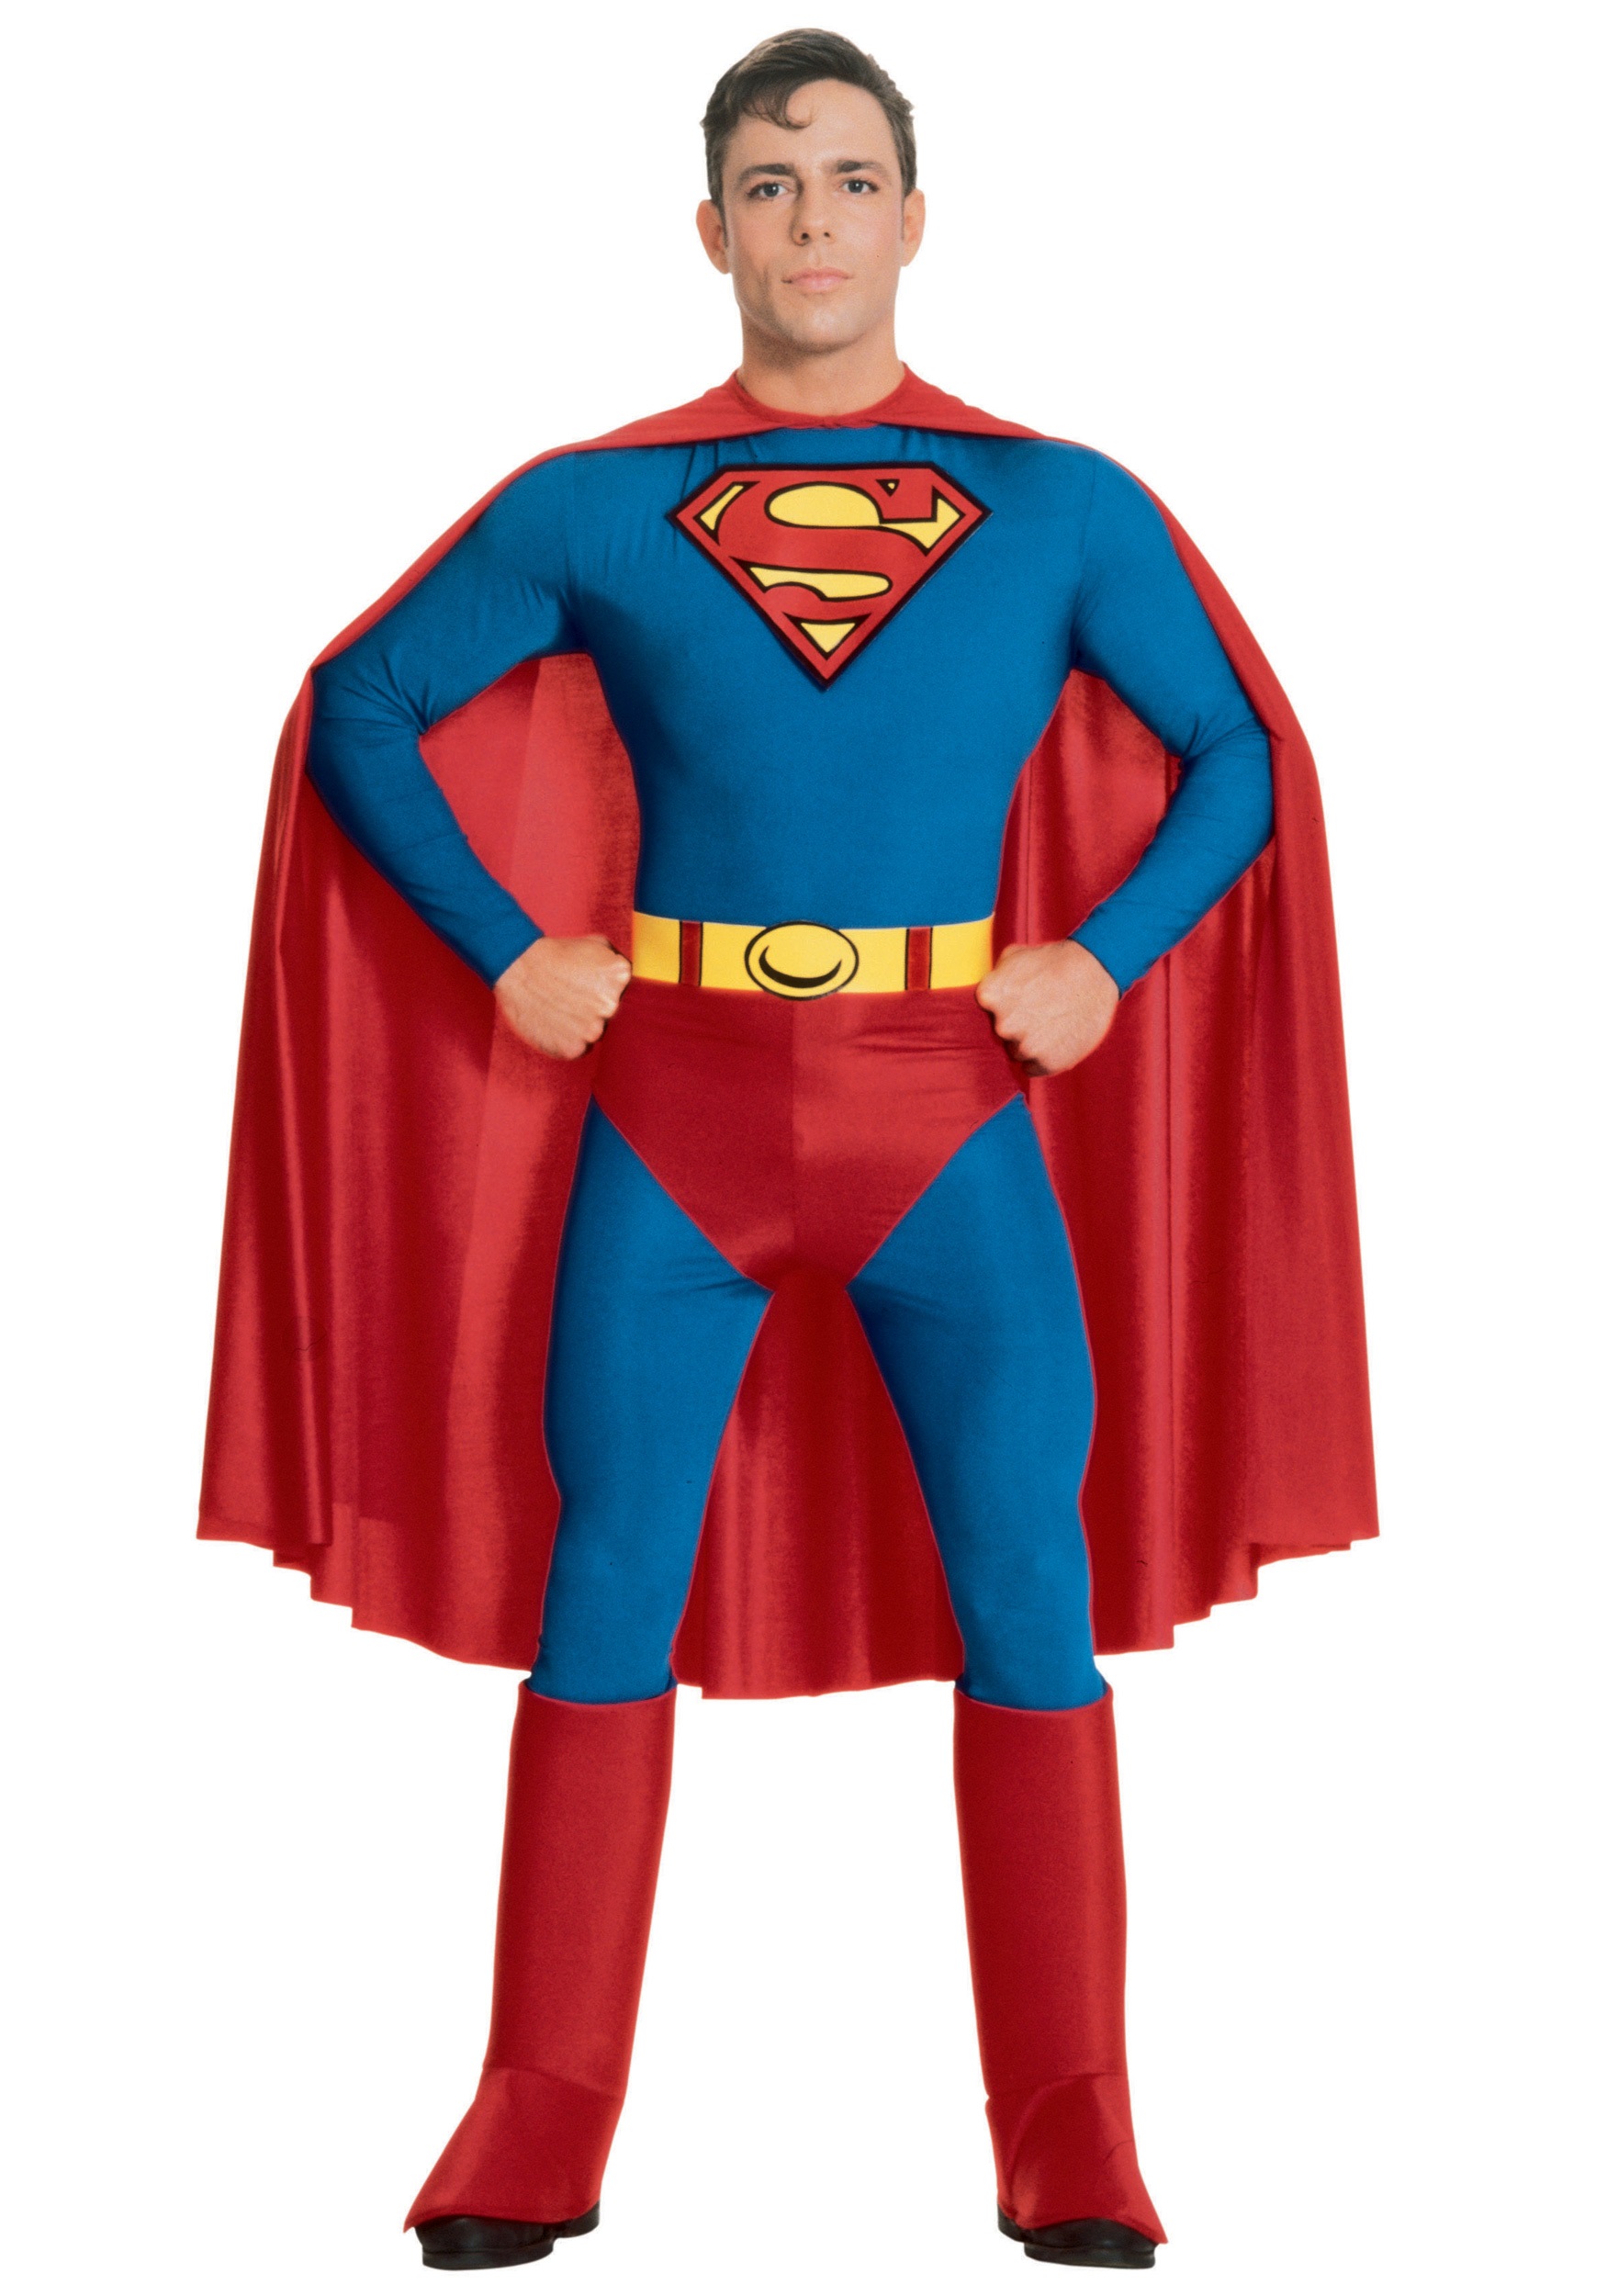 Image of Adult Superman Costume ID RU888001-M